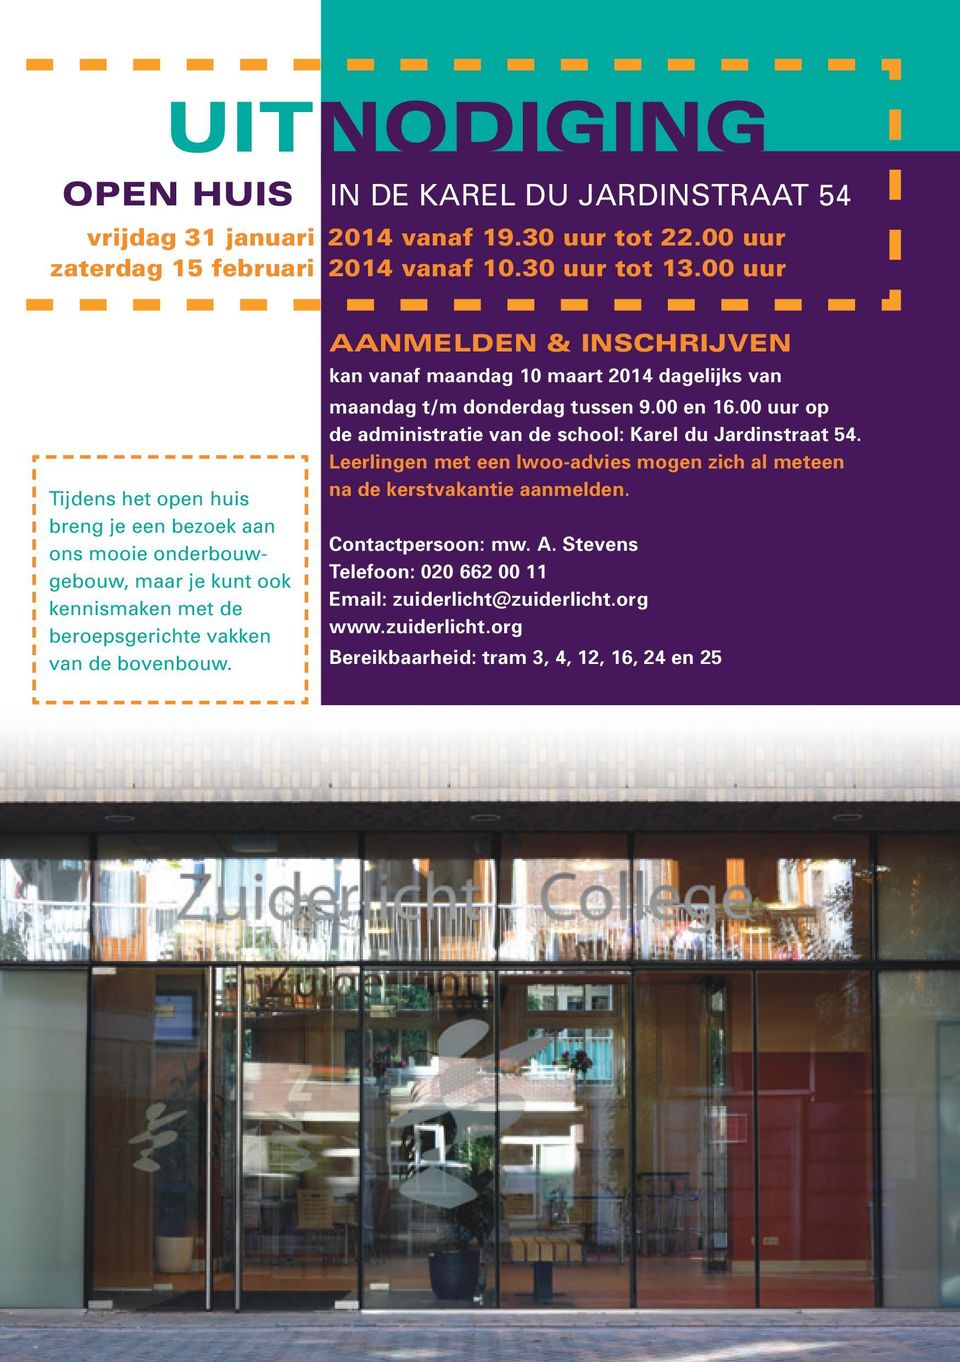 AANMELDEN & INSCHRIJVEN kan vanaf maandag 10 maart 2014 dagelijks van maandag t/m donderdag tussen 9.00 en 16.00 uur op de administratie van de school: Karel du Jardinstraat 54.